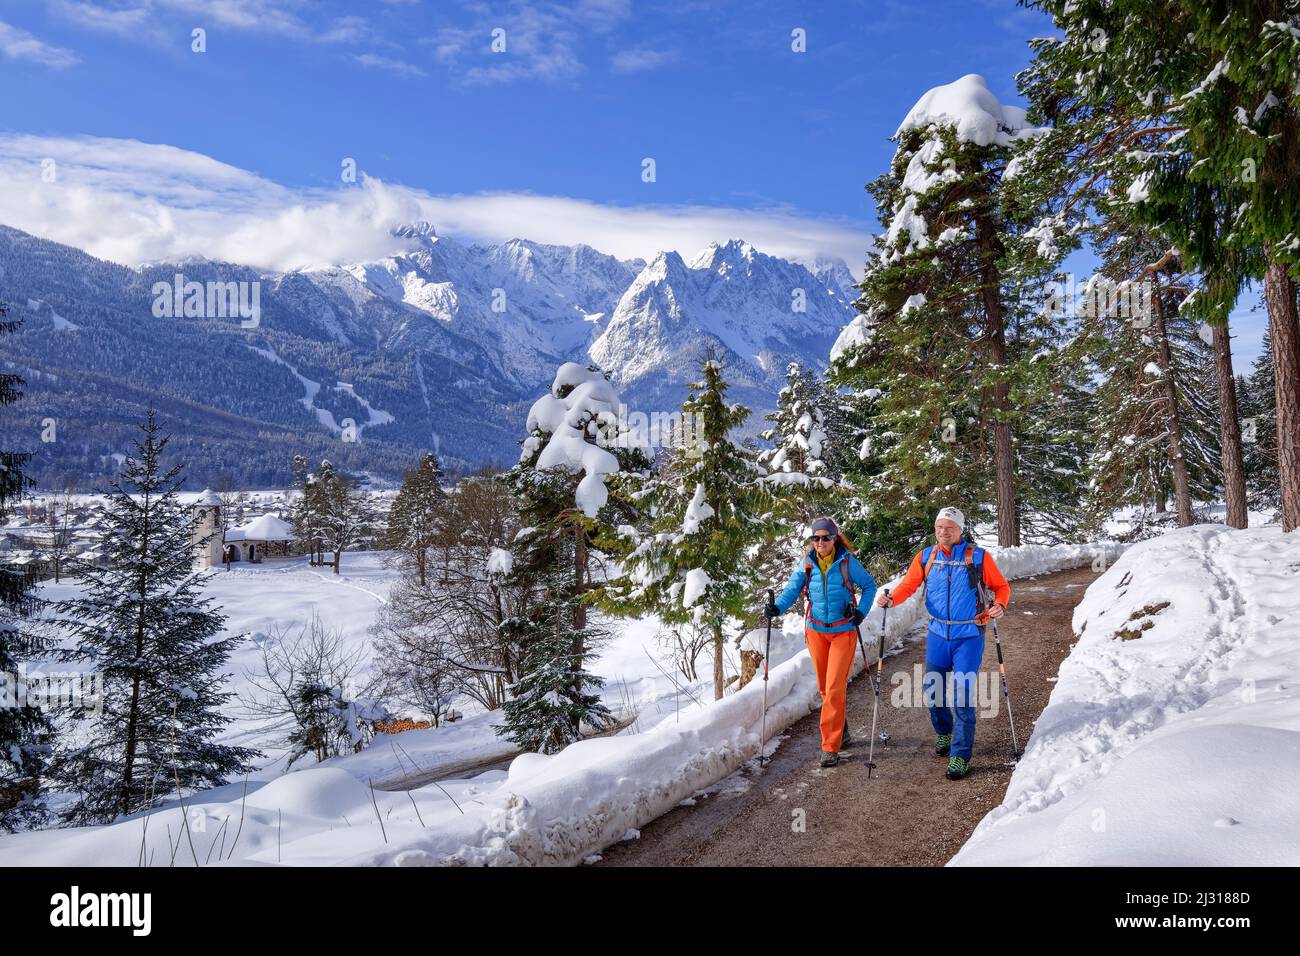 Escursioni uomo e donna su sentieri escursionistici sgomberati attraverso la foresta innevata, montagne Wetterstein sullo sfondo, Kramerplateauweg, Garmisch, Alpi Ammergau, Werdenfelser Land, Baviera superiore, Baviera, Germania Foto Stock